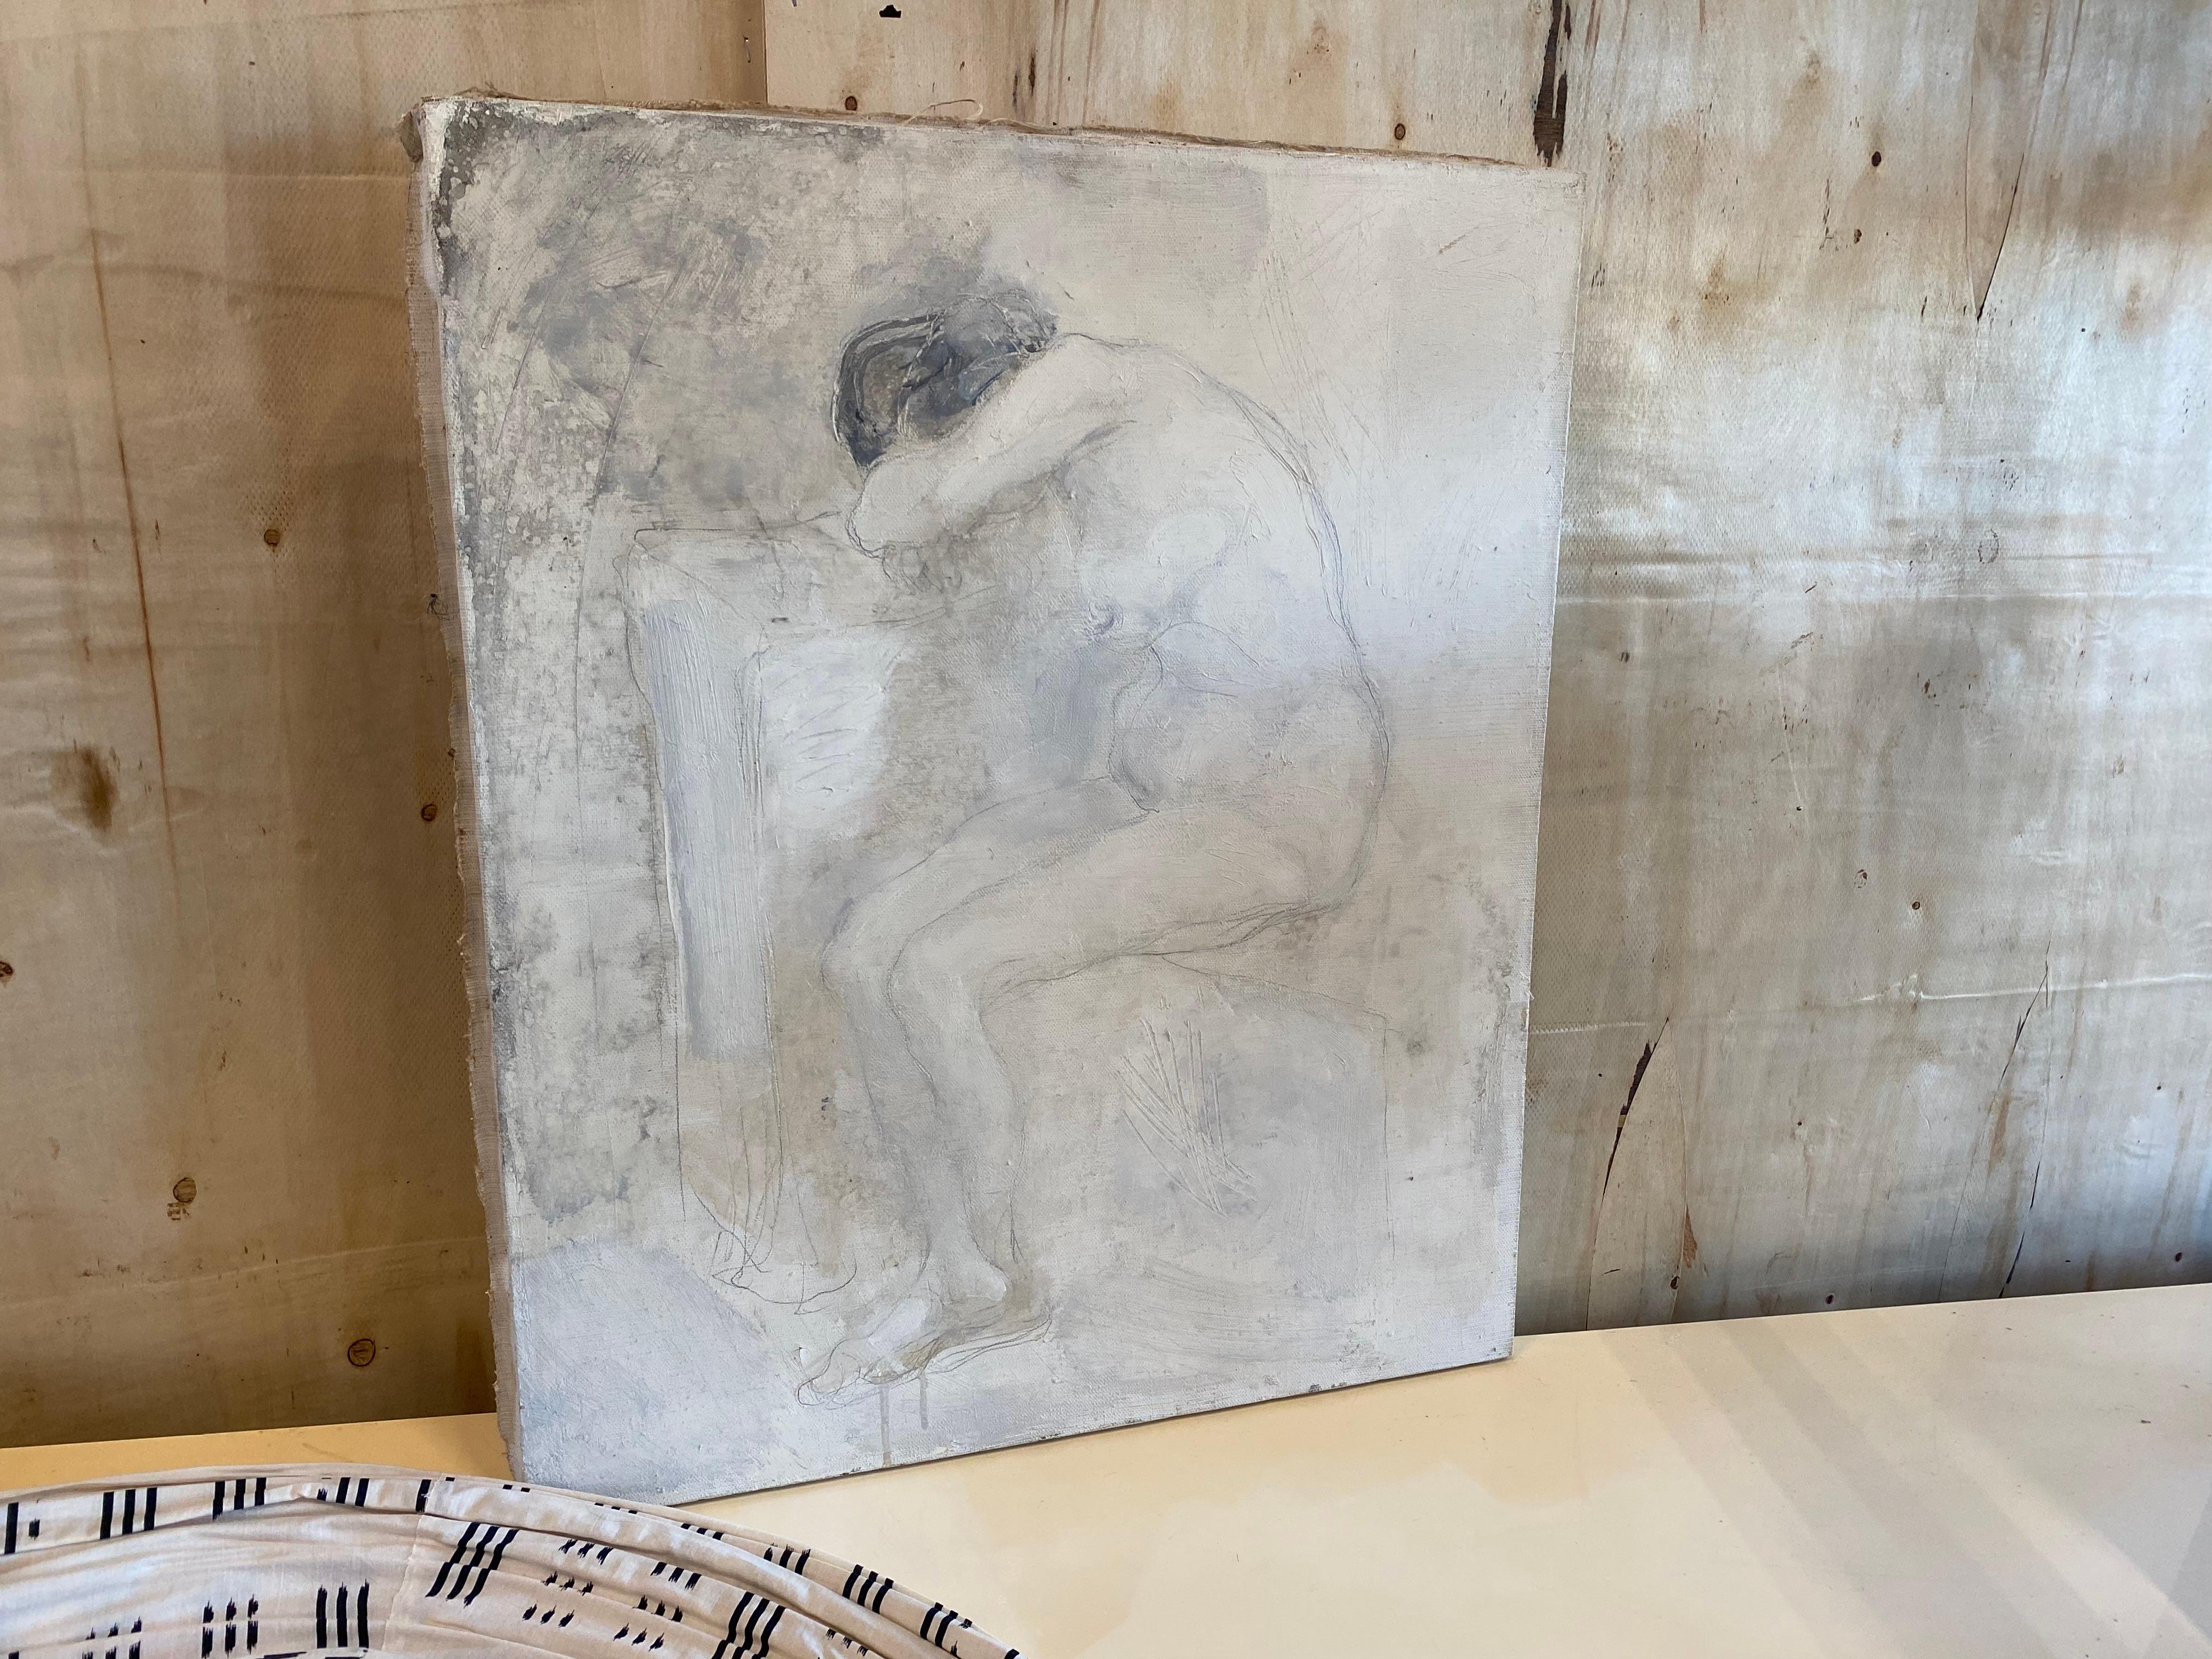 Peinture de Svetlin Roussev, nu féminin, technique de mélange sur toile.
La peinture montre un nu féminin dans des couleurs monochromes. Elle n'est pas encadrée et est signée au dos.
Svetlin Roussev est un artiste, homme politique, collectionneur